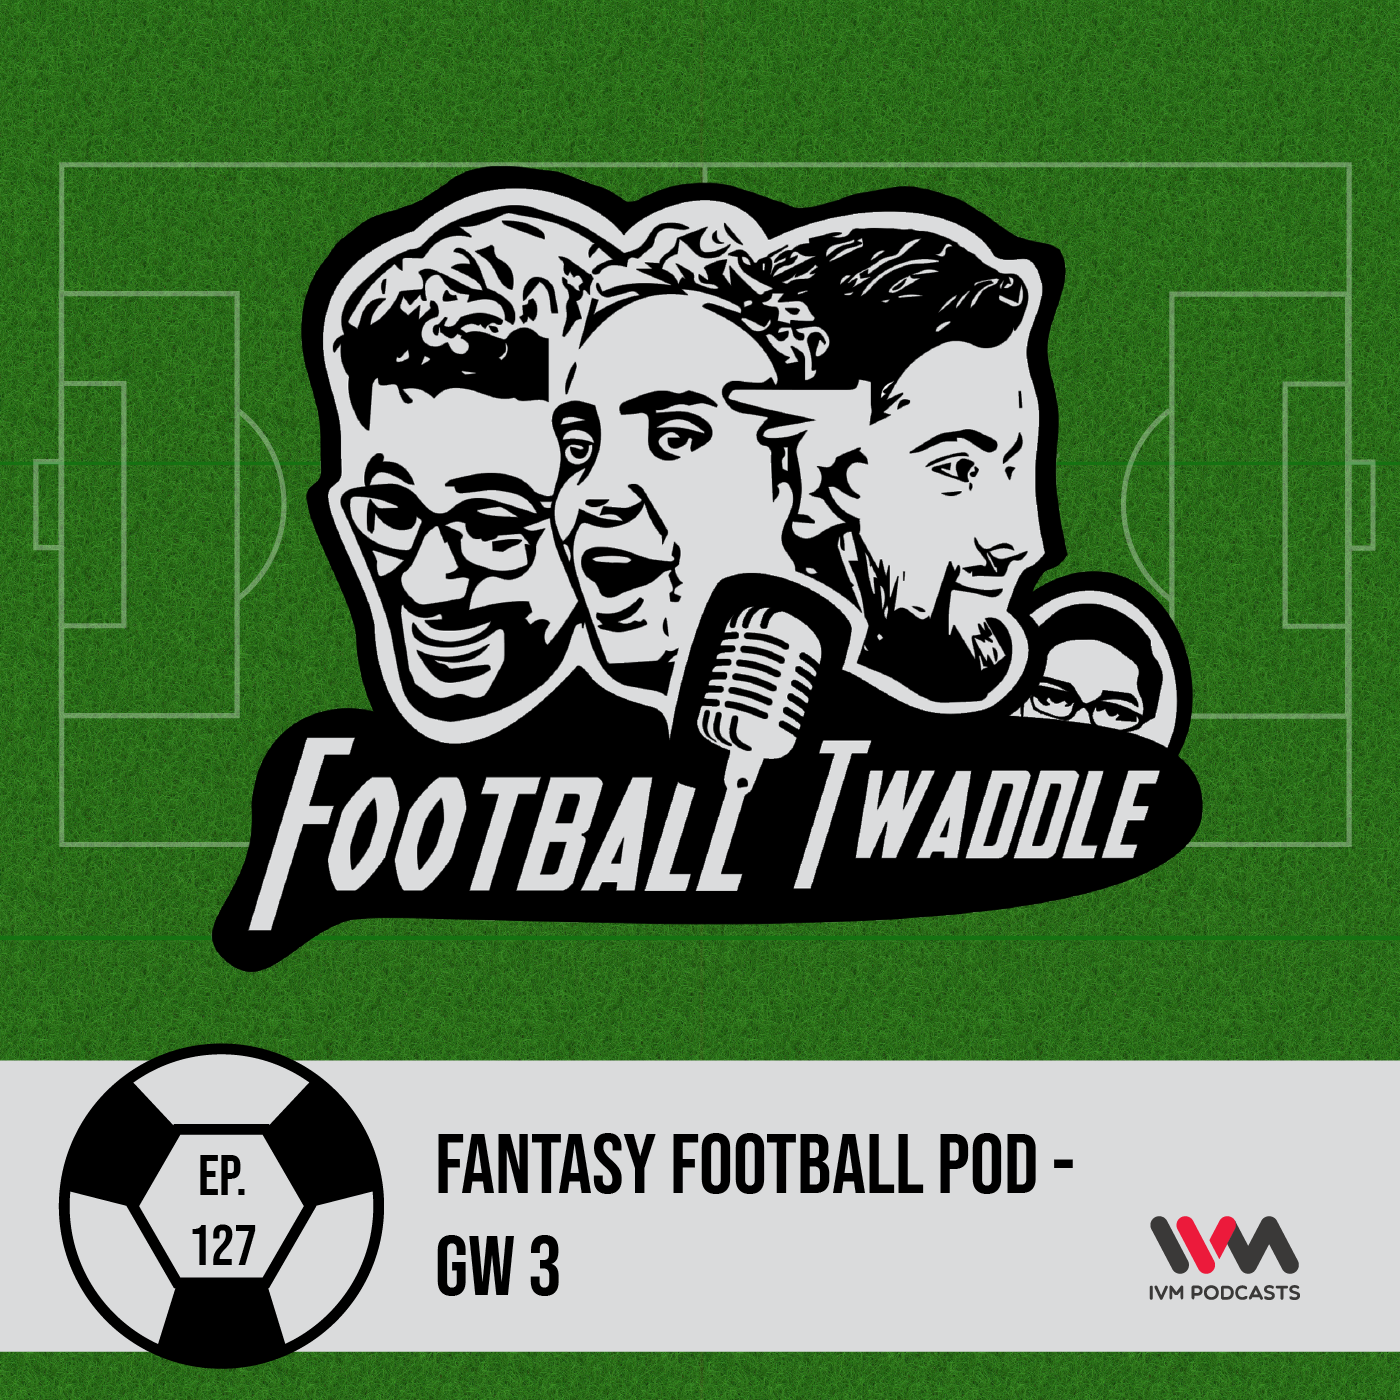 Fantasy Football Pod - GW 3